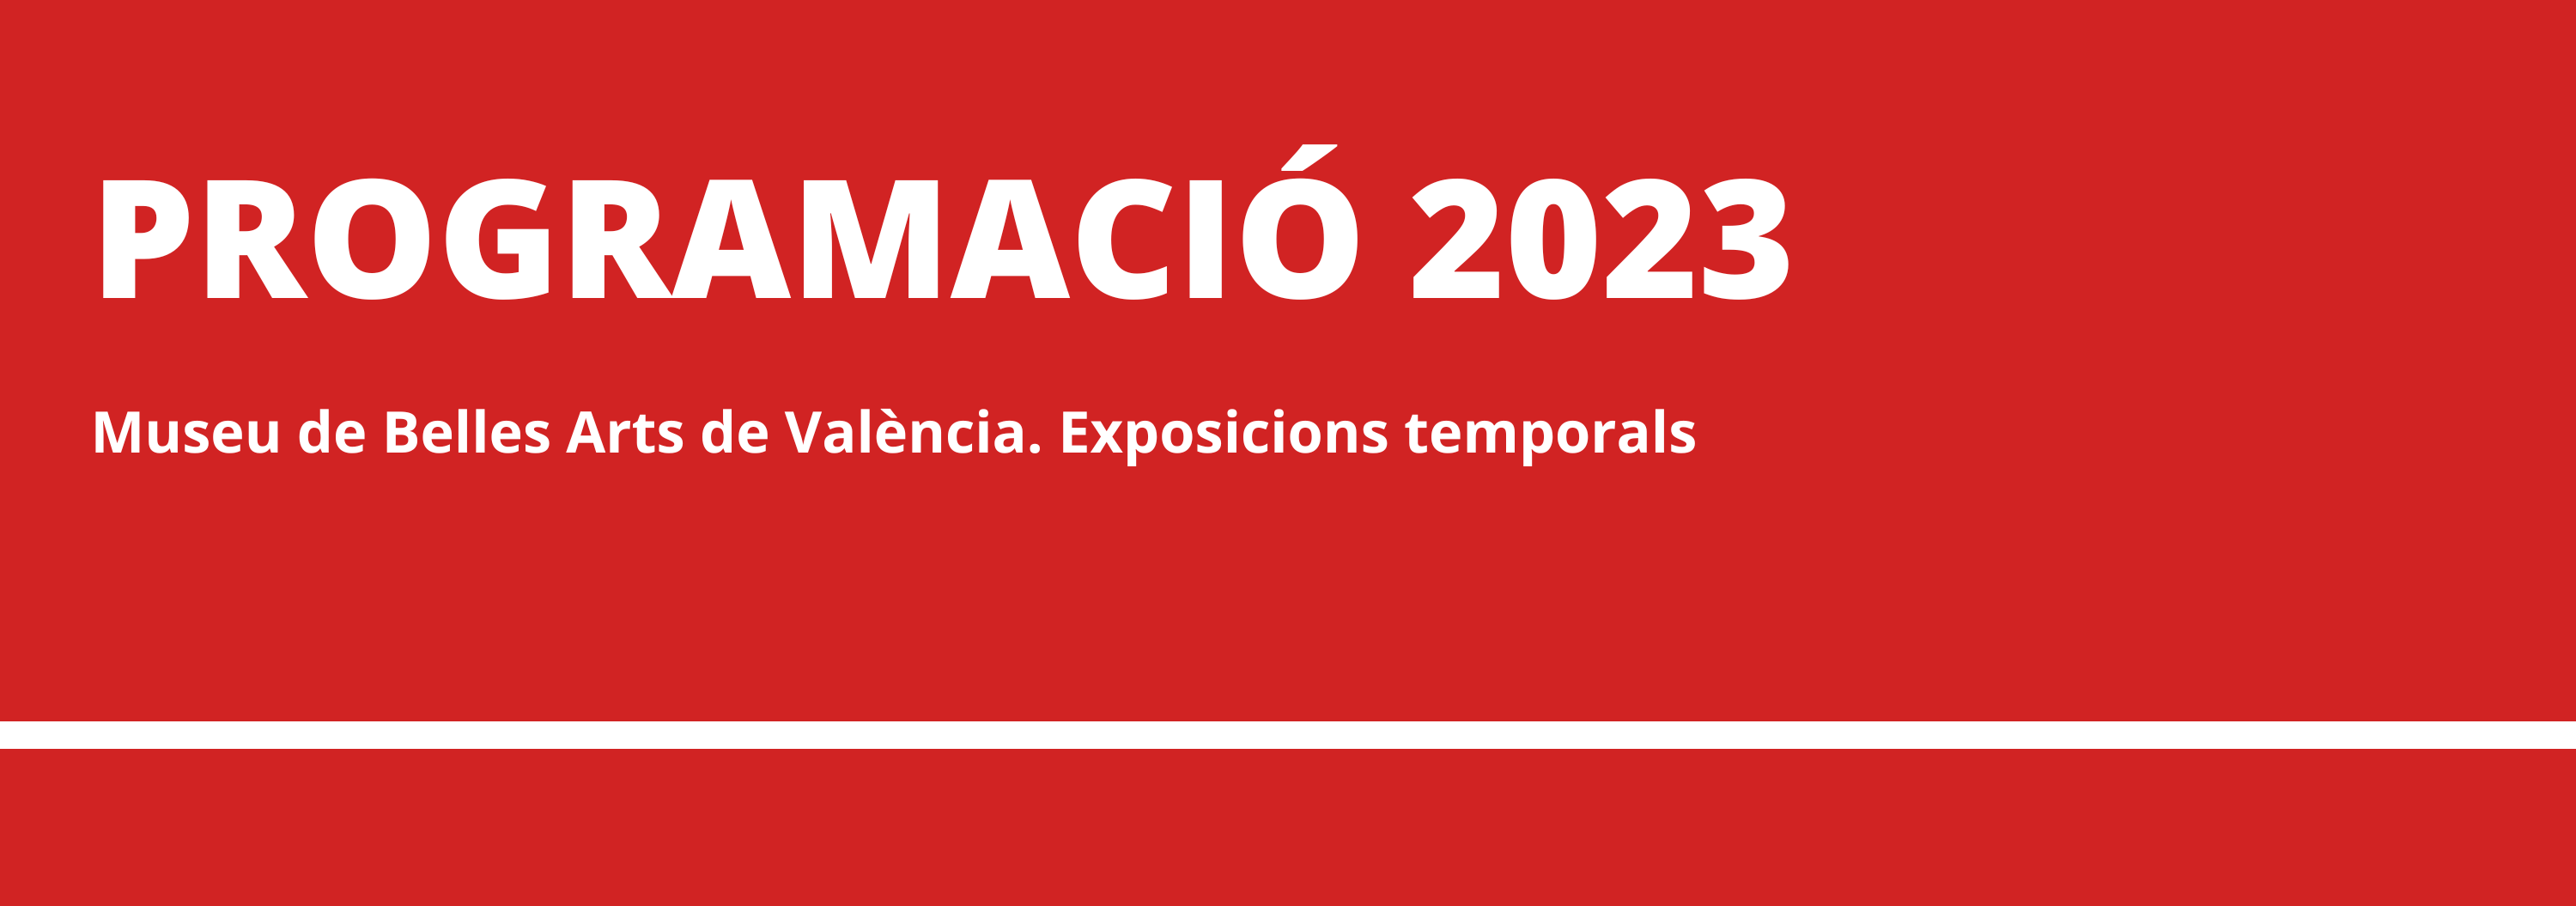 El Museu de Belles Arts de València presenta la seua programació d’exposicions per a l’any 2023